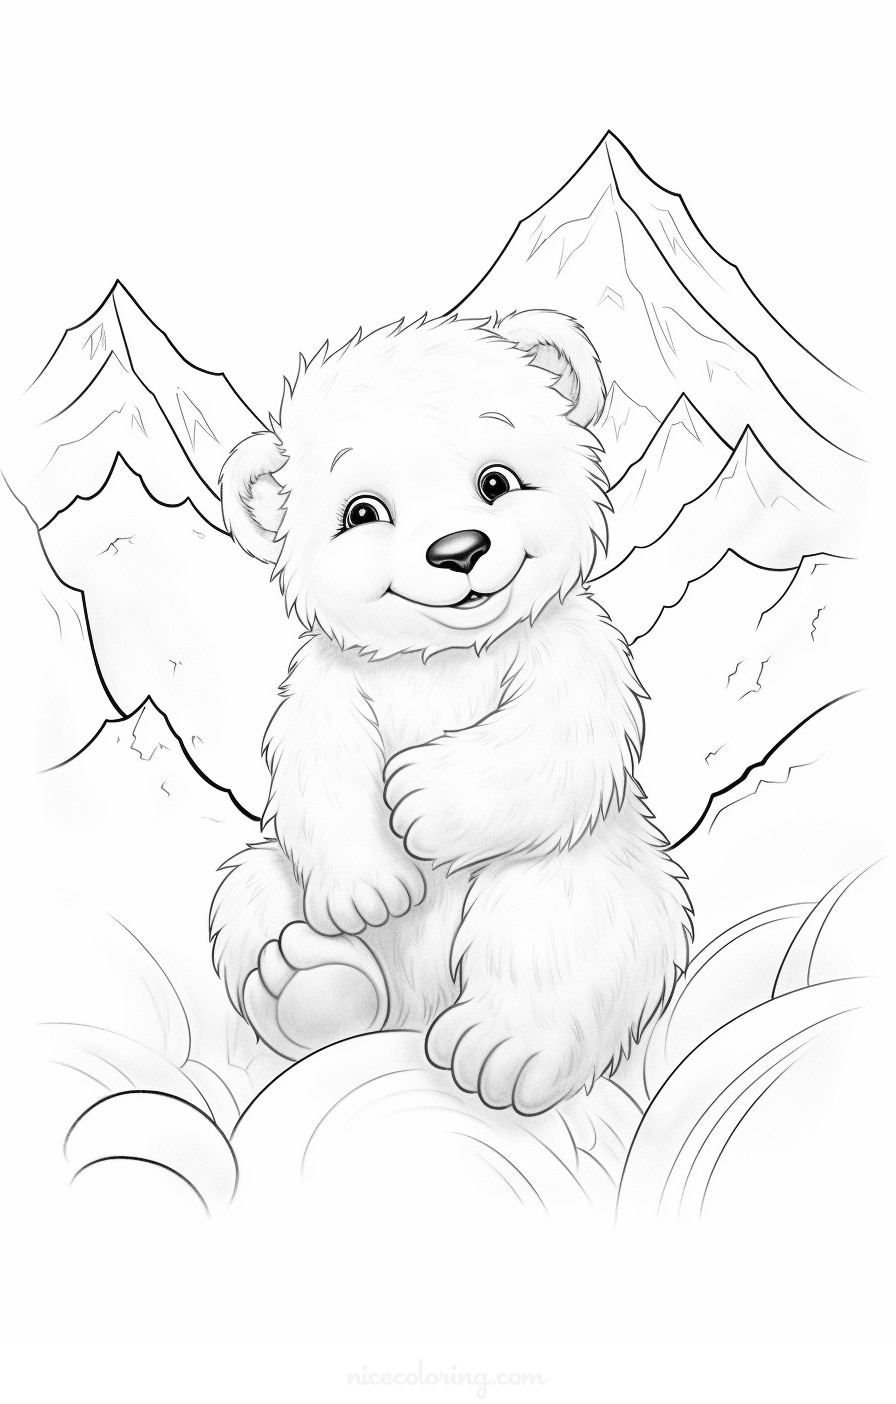 Página de colorear de una familia de osos en el bosque